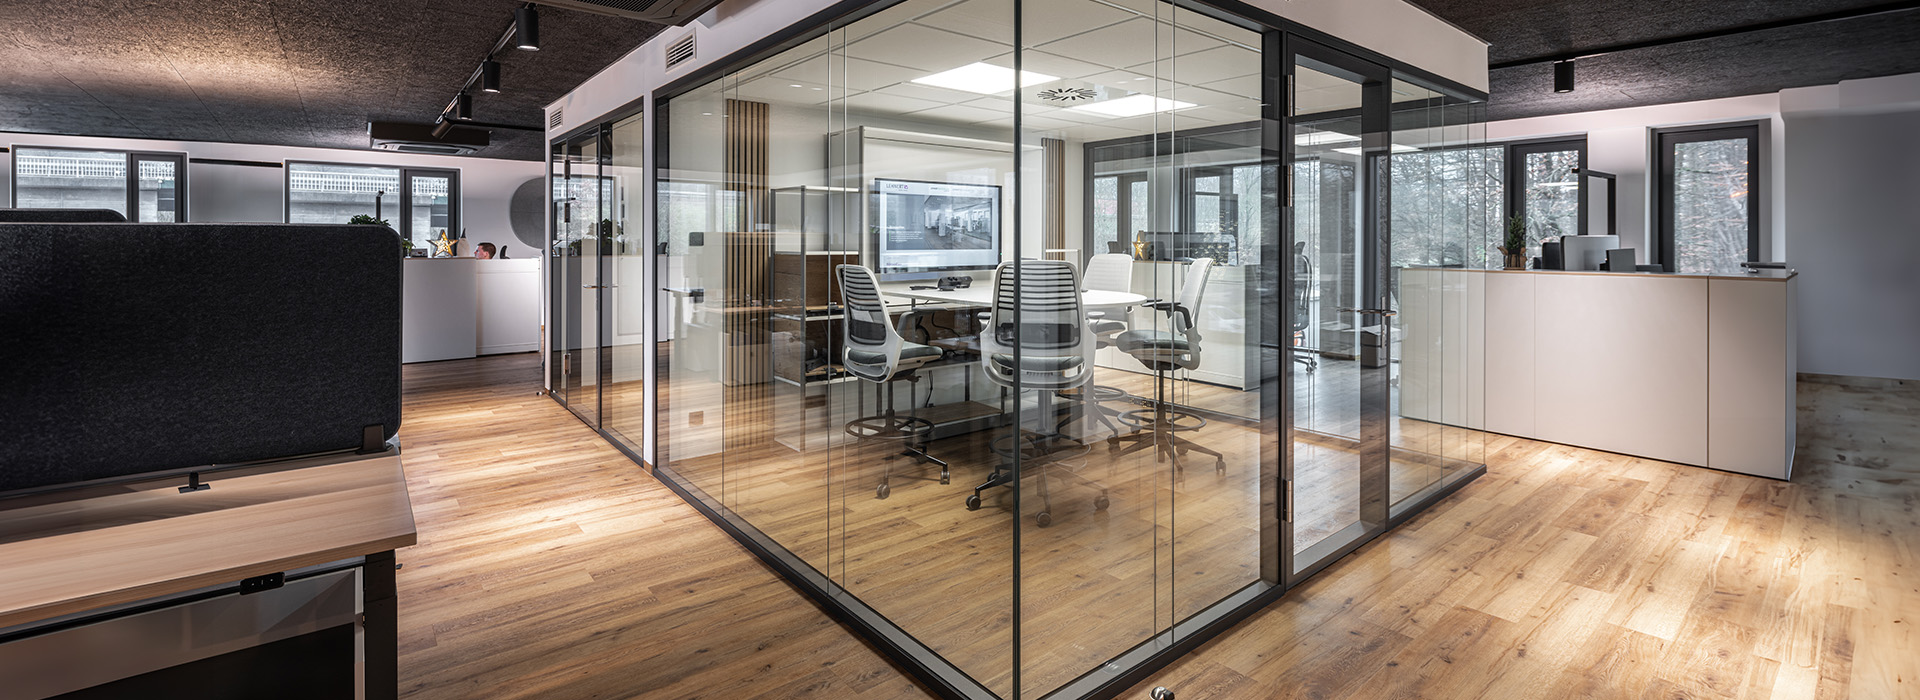 Schallschutzverglasung für moderne Büro- und Meetingräume